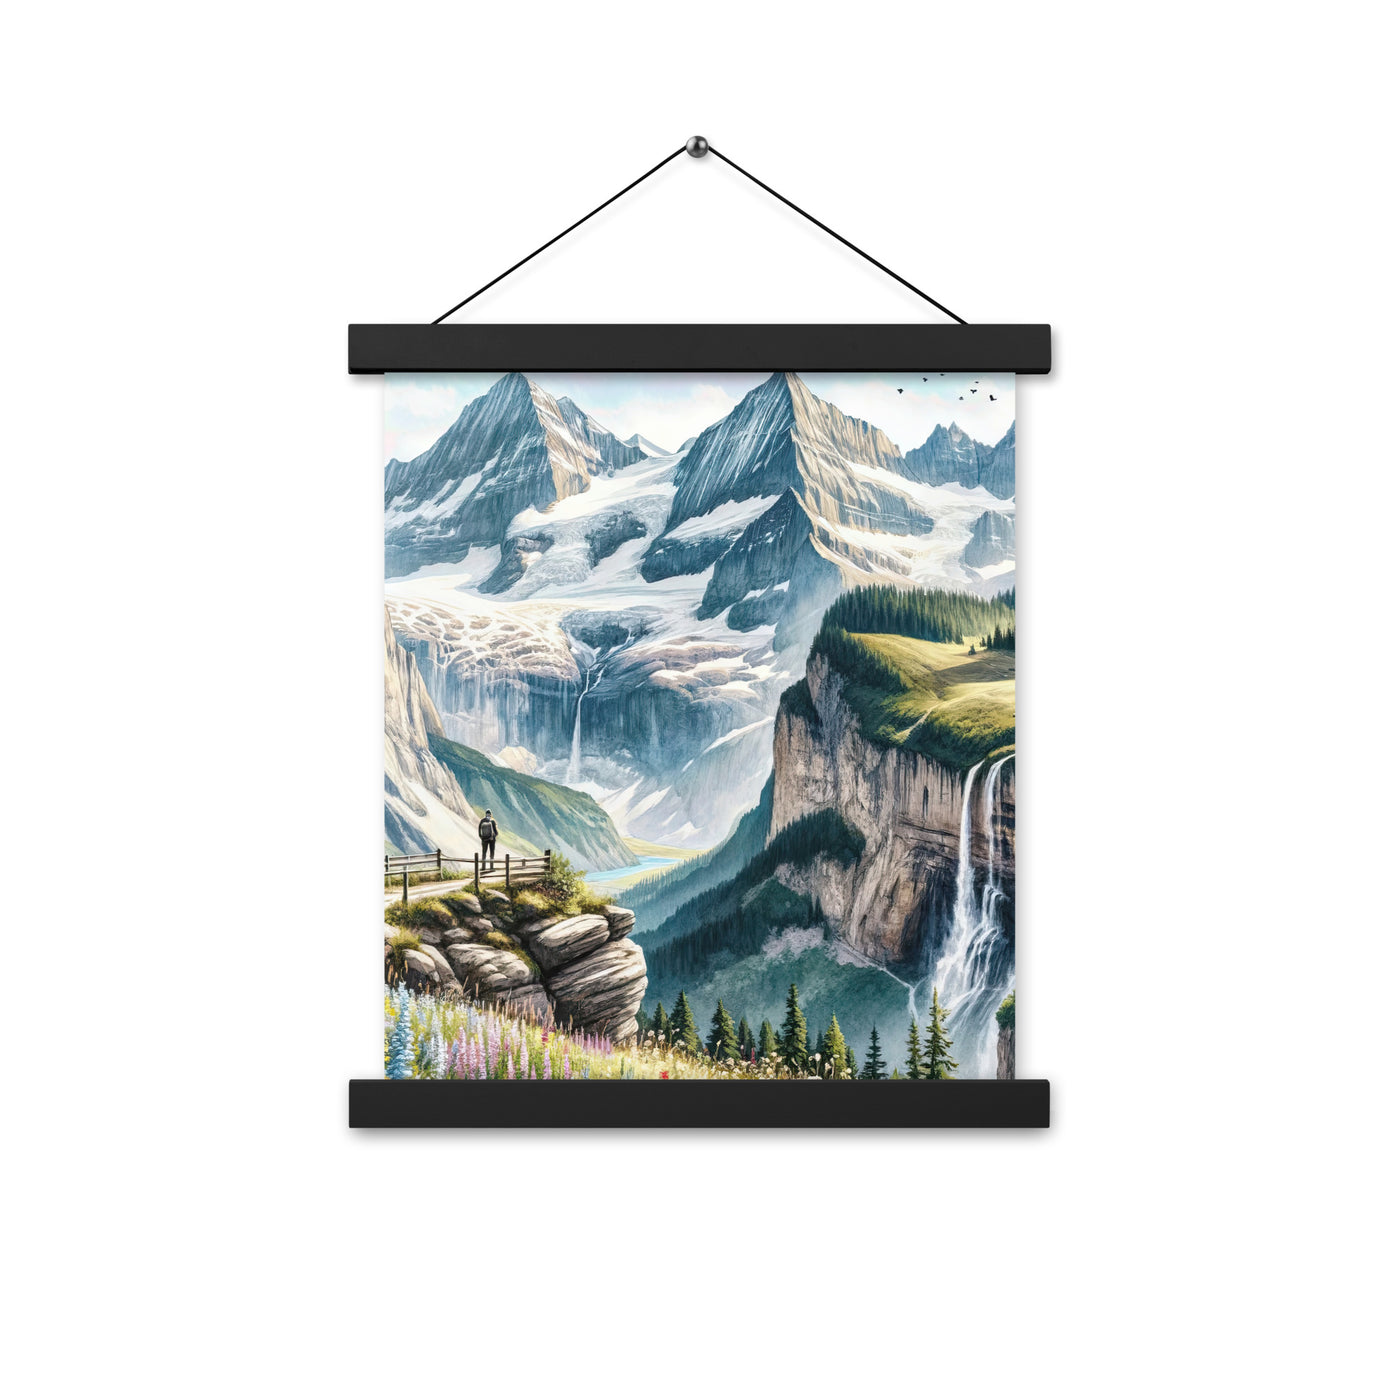 Aquarell-Panoramablick der Alpen mit schneebedeckten Gipfeln, Wasserfällen und Wanderern - Premium Poster mit Aufhängung wandern xxx yyy zzz 27.9 x 35.6 cm